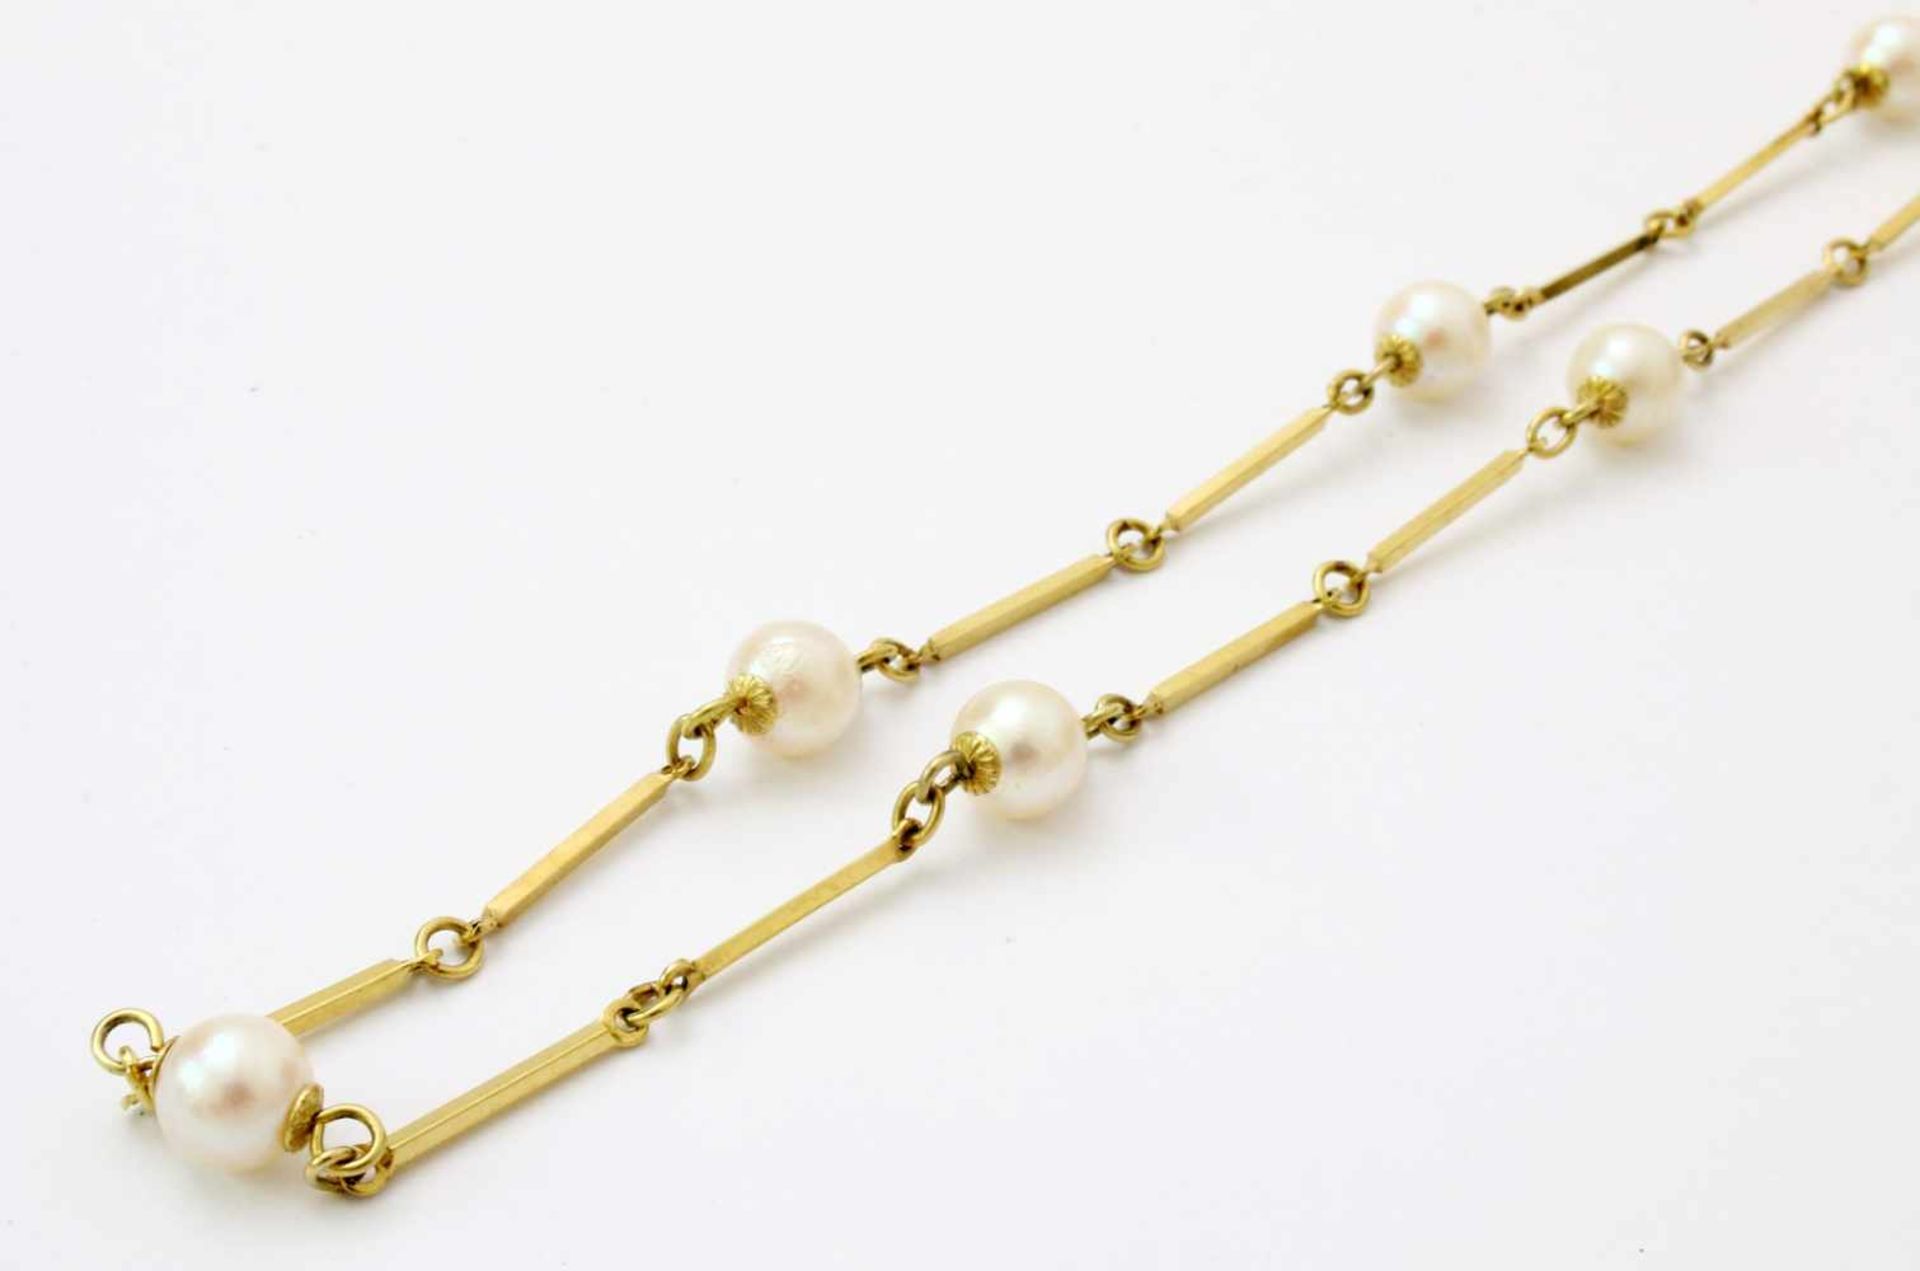 Gelbgold-Kette mit PerlenGG 585, Stabglieder unterbrochen von Perlen, Länge: 68 cm, Gew.: 13,5 g.